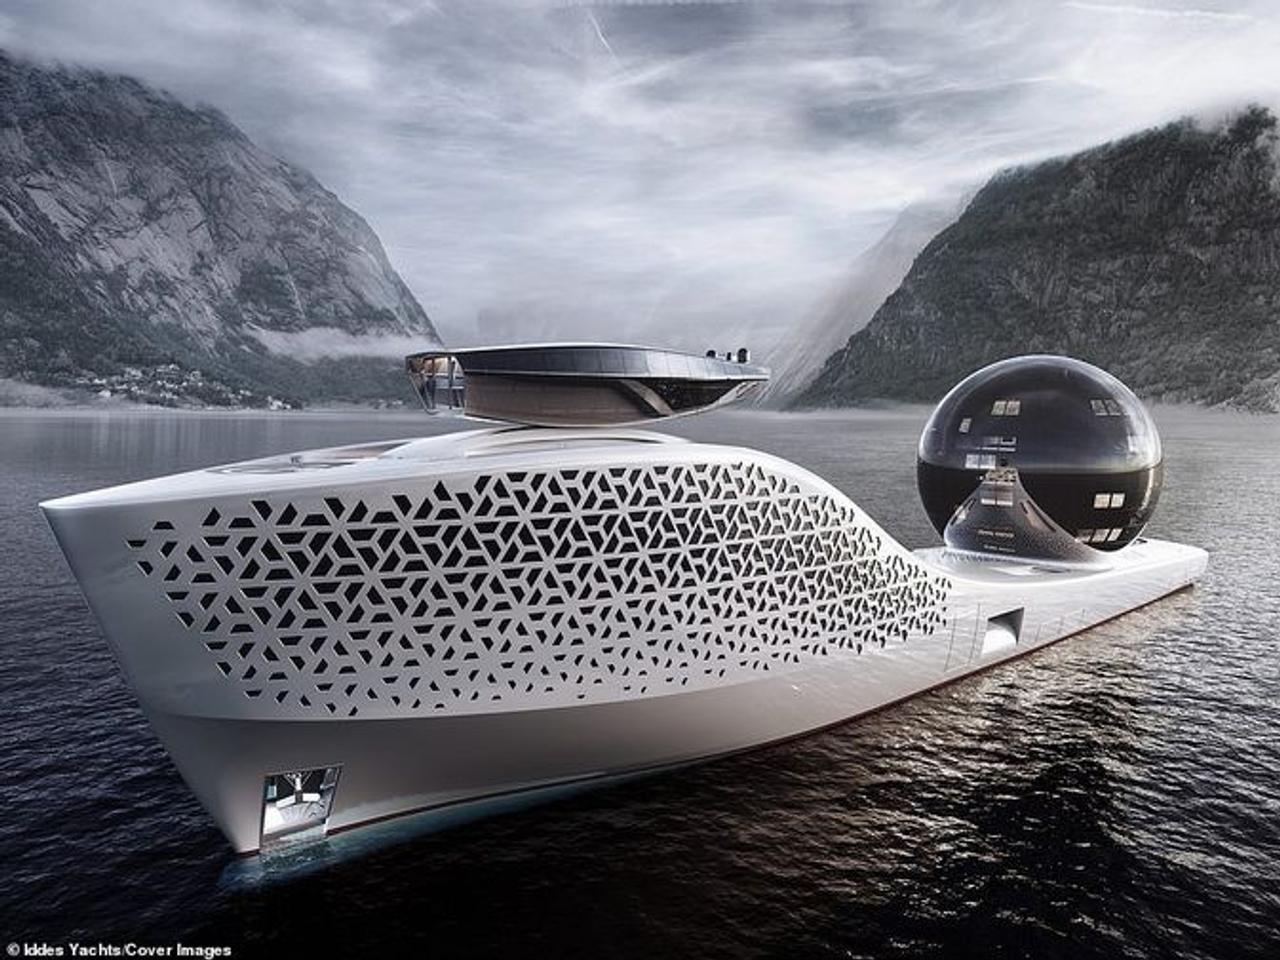 Грандиозный проект Iddes Yacht, научно-исследовательское судно Earth 300 оснащенное «реактором на расплавленной соли»